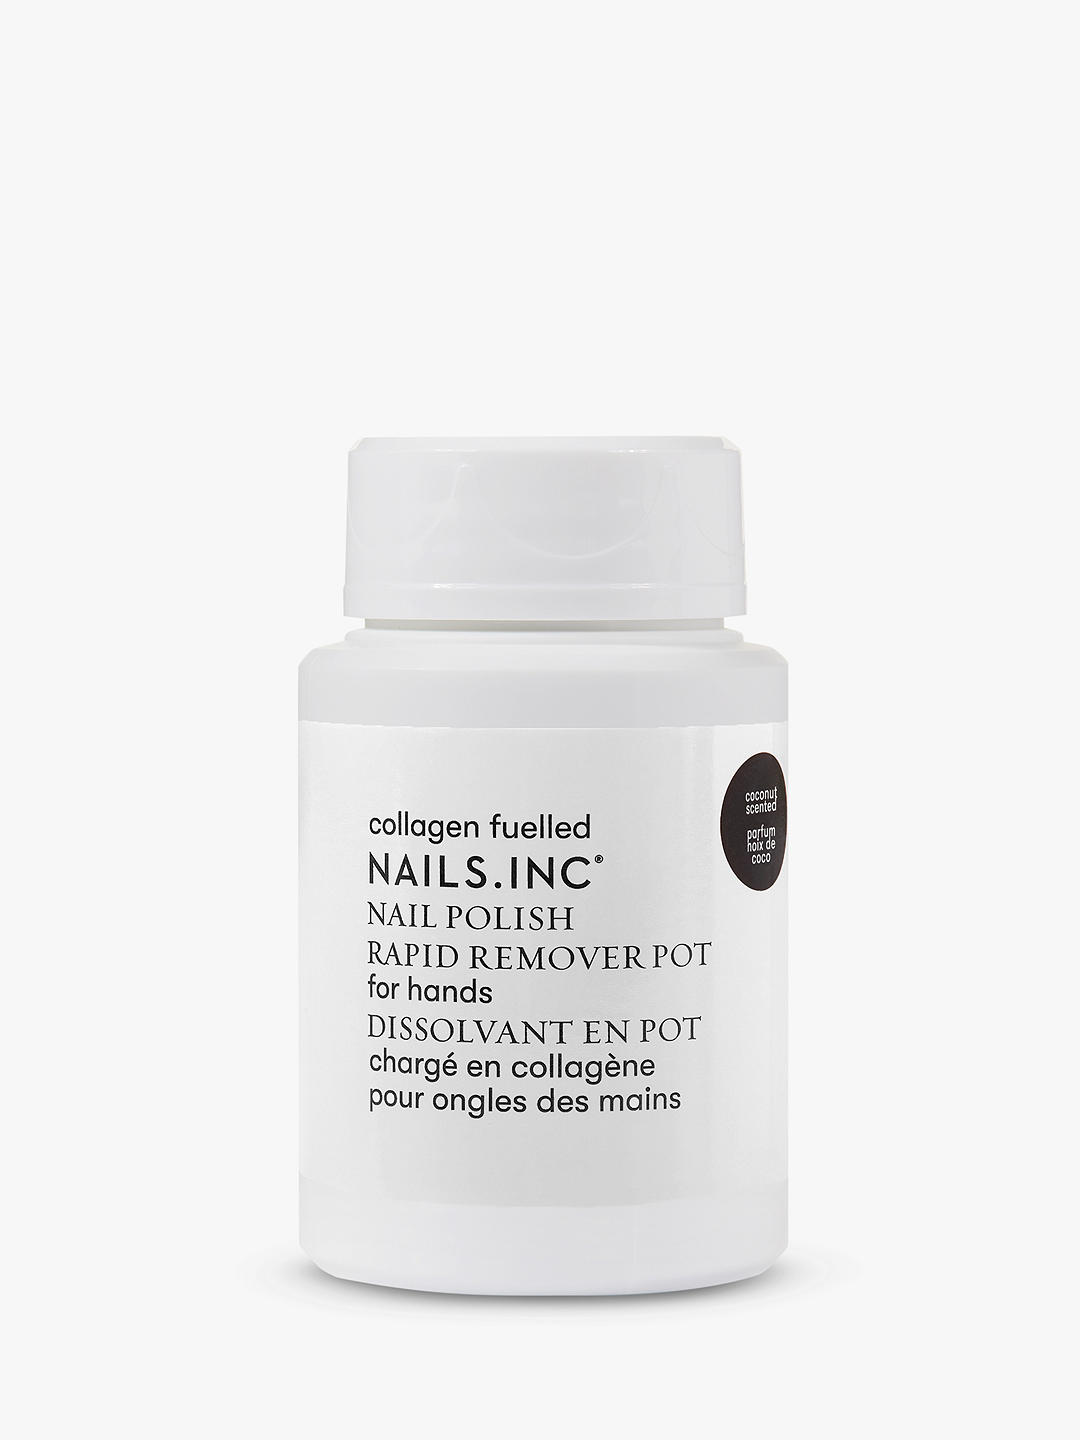 Nails Inc Express Nail Polish Remover, 50ml 1